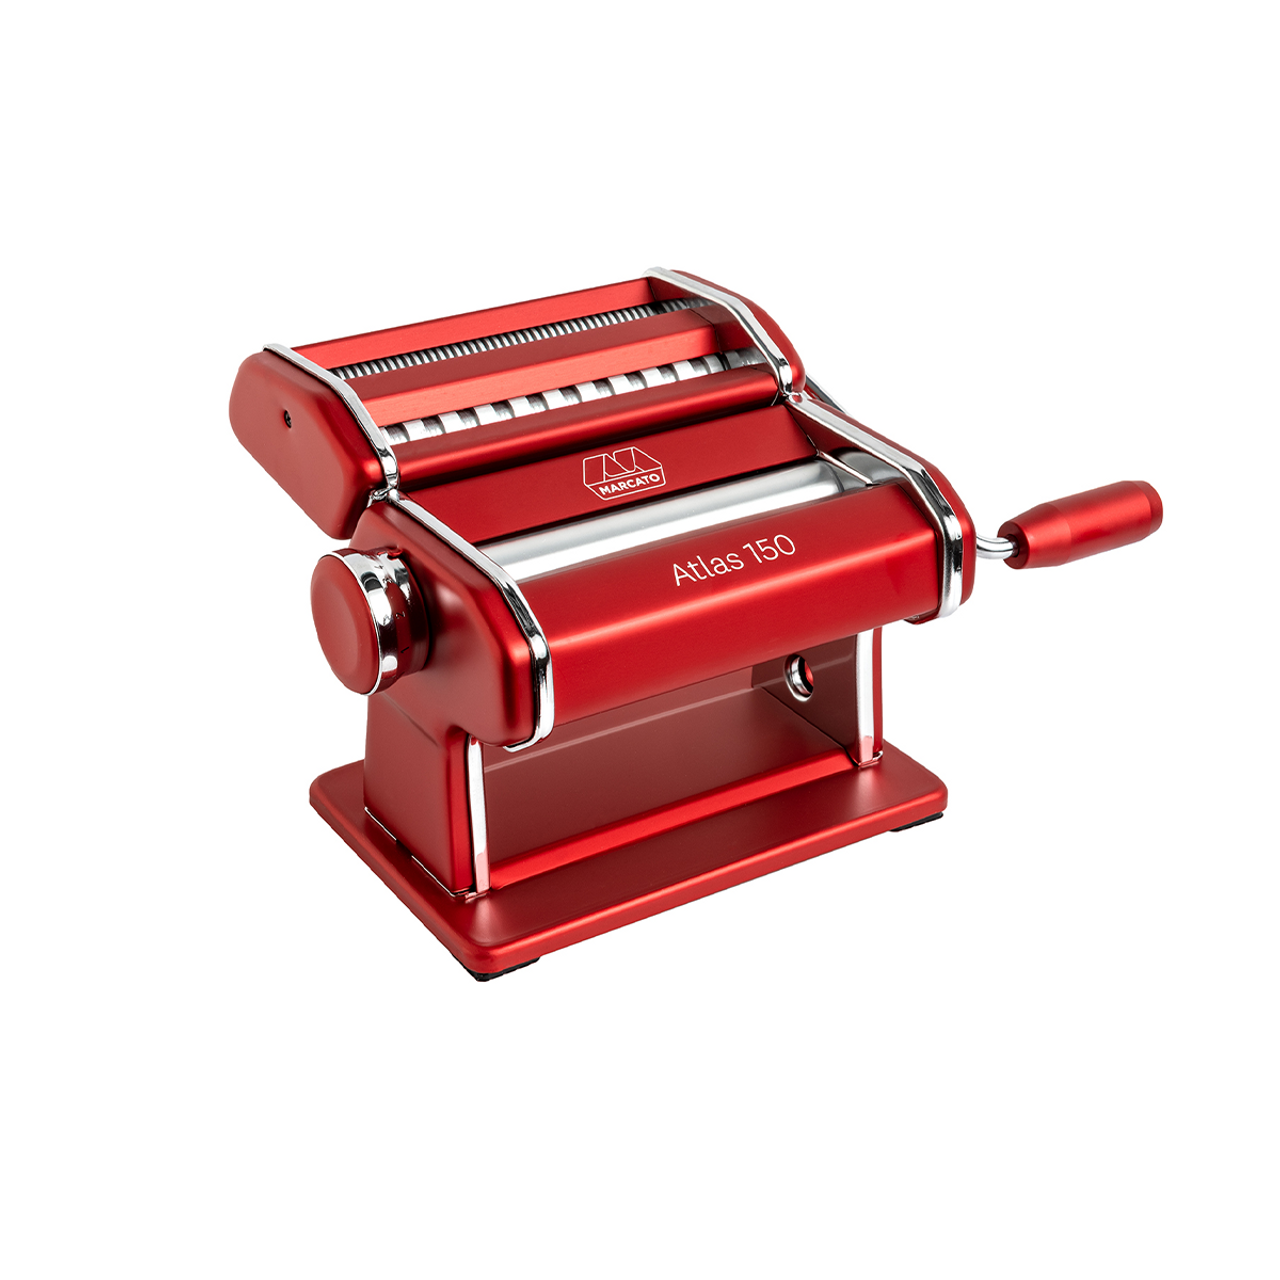 Atlas 150 Red Pasta Machine